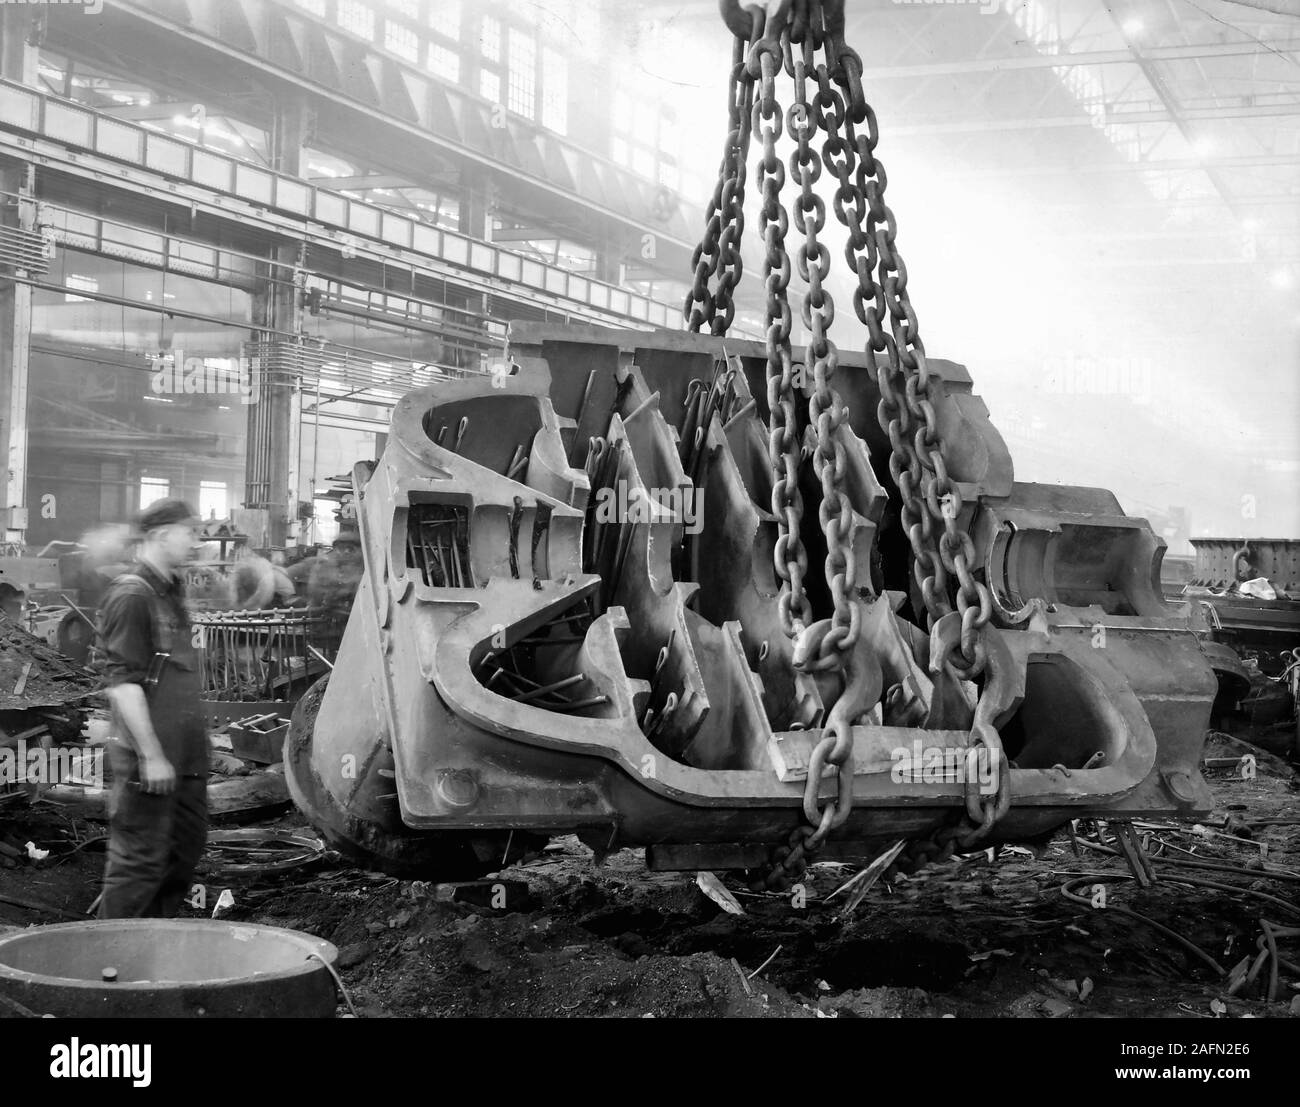 Un travailleur Allis Chalmers observe un heavy metal casting ascenseurs grues sur le sol de l'usine, ca. L'année 1930. Banque D'Images